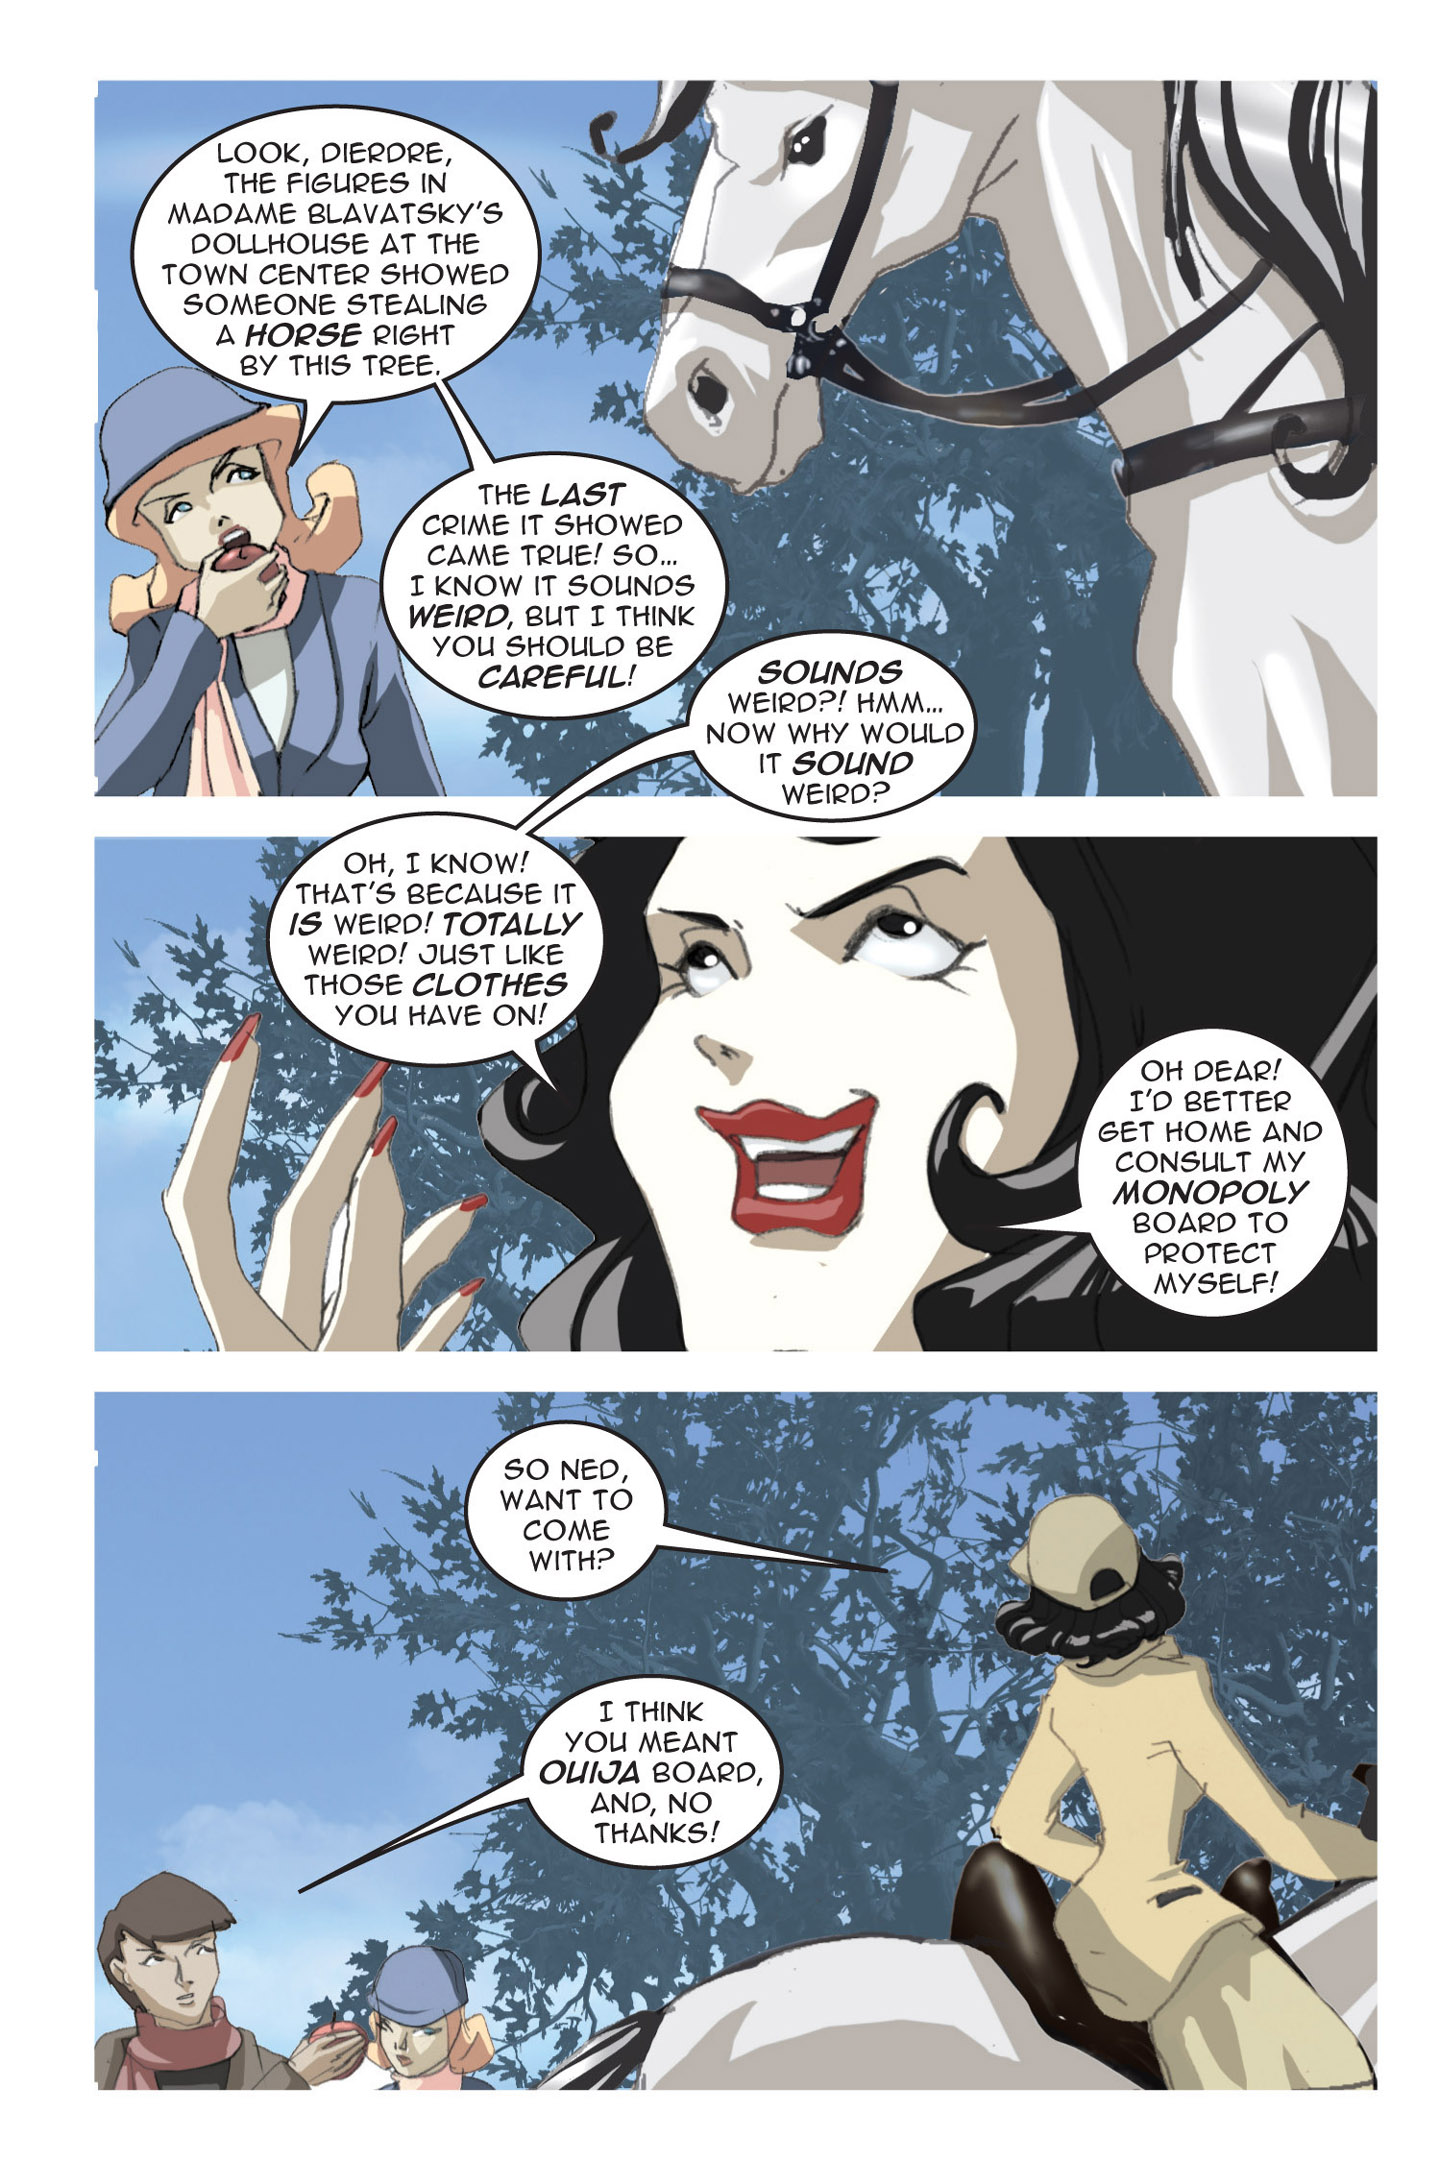 Read online Nancy Drew comic -  Issue #3 - 20